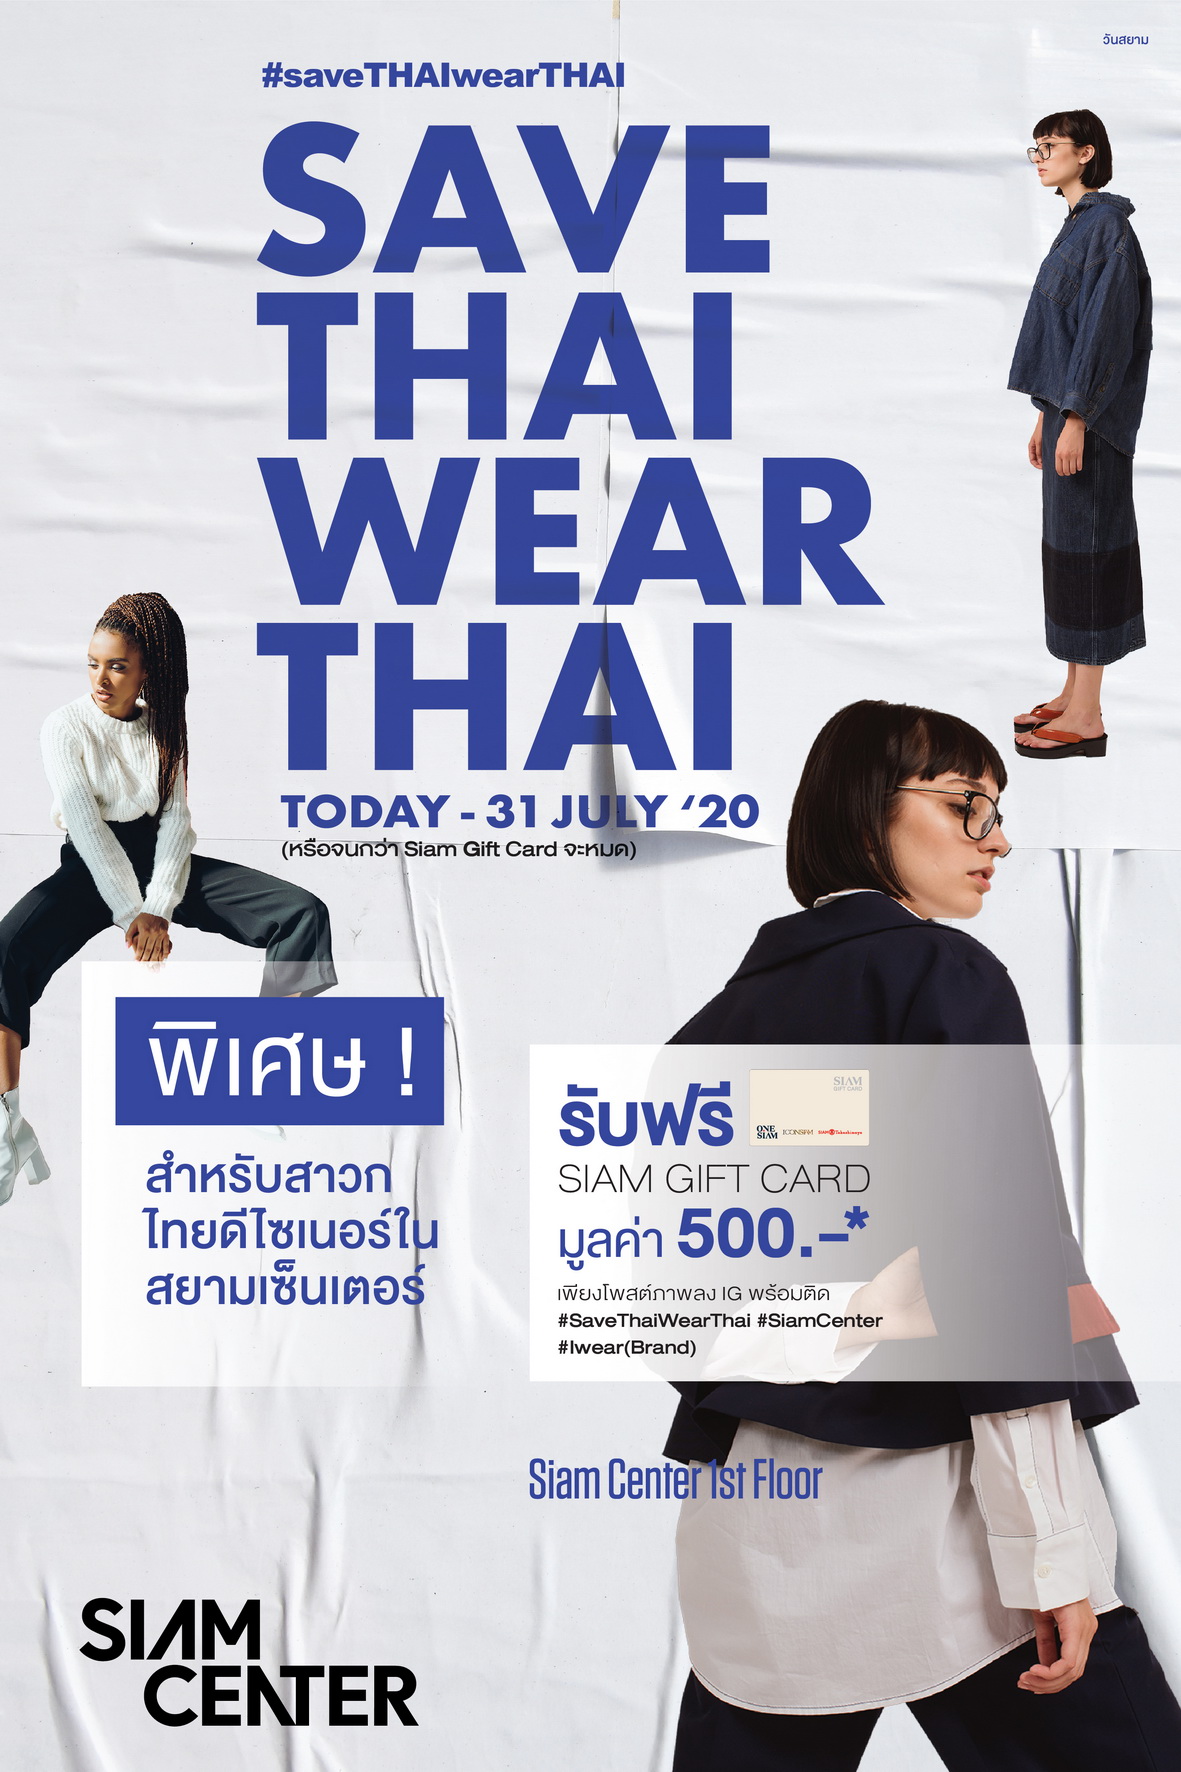 สยามเซ็นเตอร์ชวนสาวกแฟชั่นแสดงพลังความเป็นไทย ปลุกกระแสแฟชั่นไทยให้ฮอตทั่วเมือง #saveTHAIwearTHAI ตั้งแต่วันนี้ 31 กรกฏาคม ศกนี้